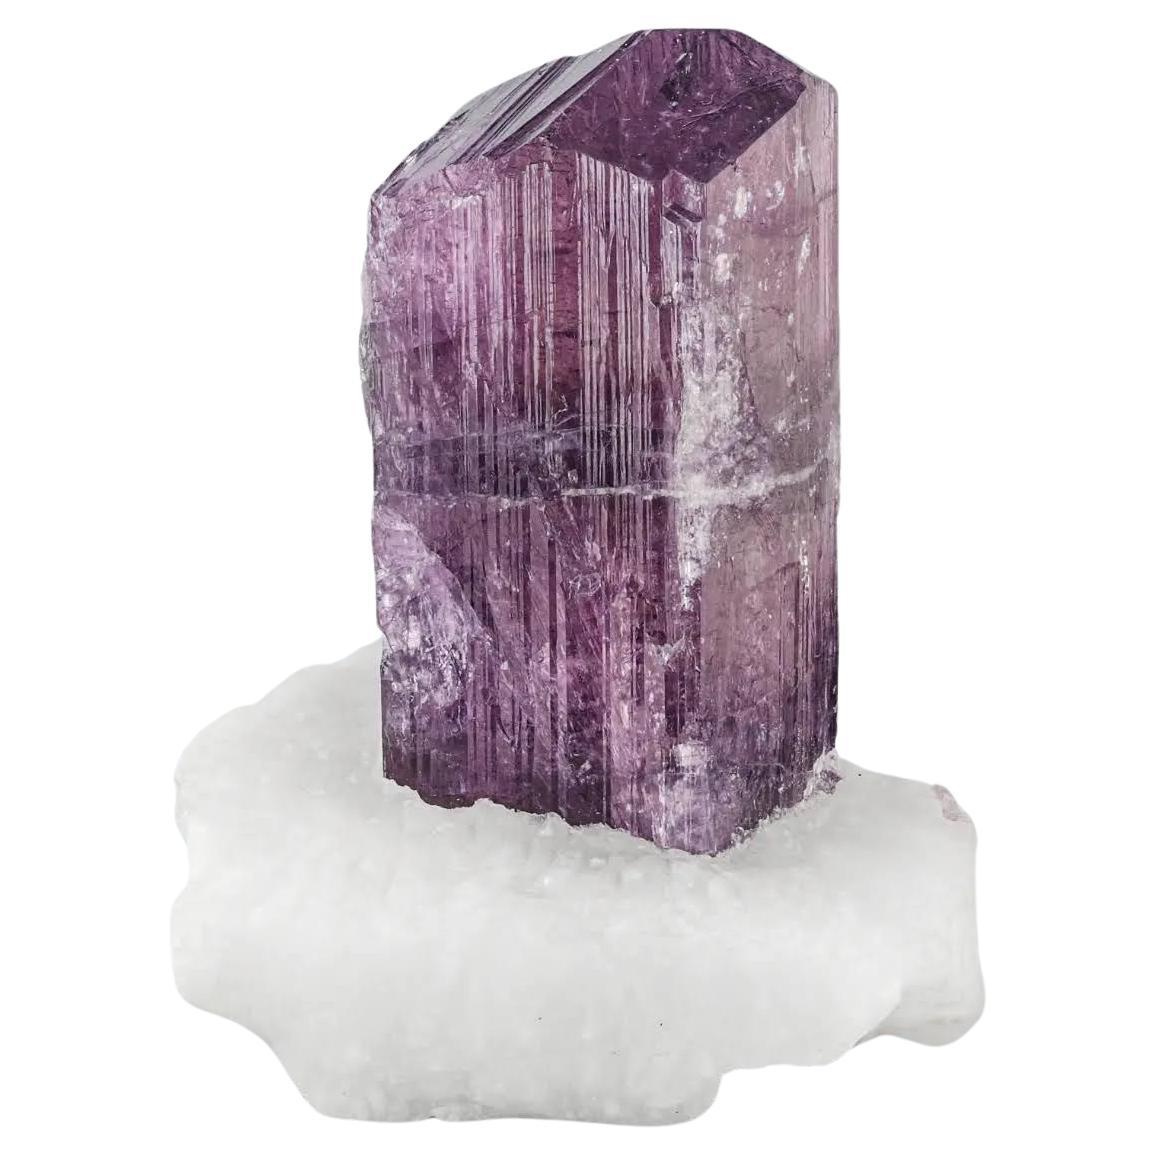 Leuchtend lilafarbener Scapolite-Kristall auf Calcite-Matrix aus Afghanistan